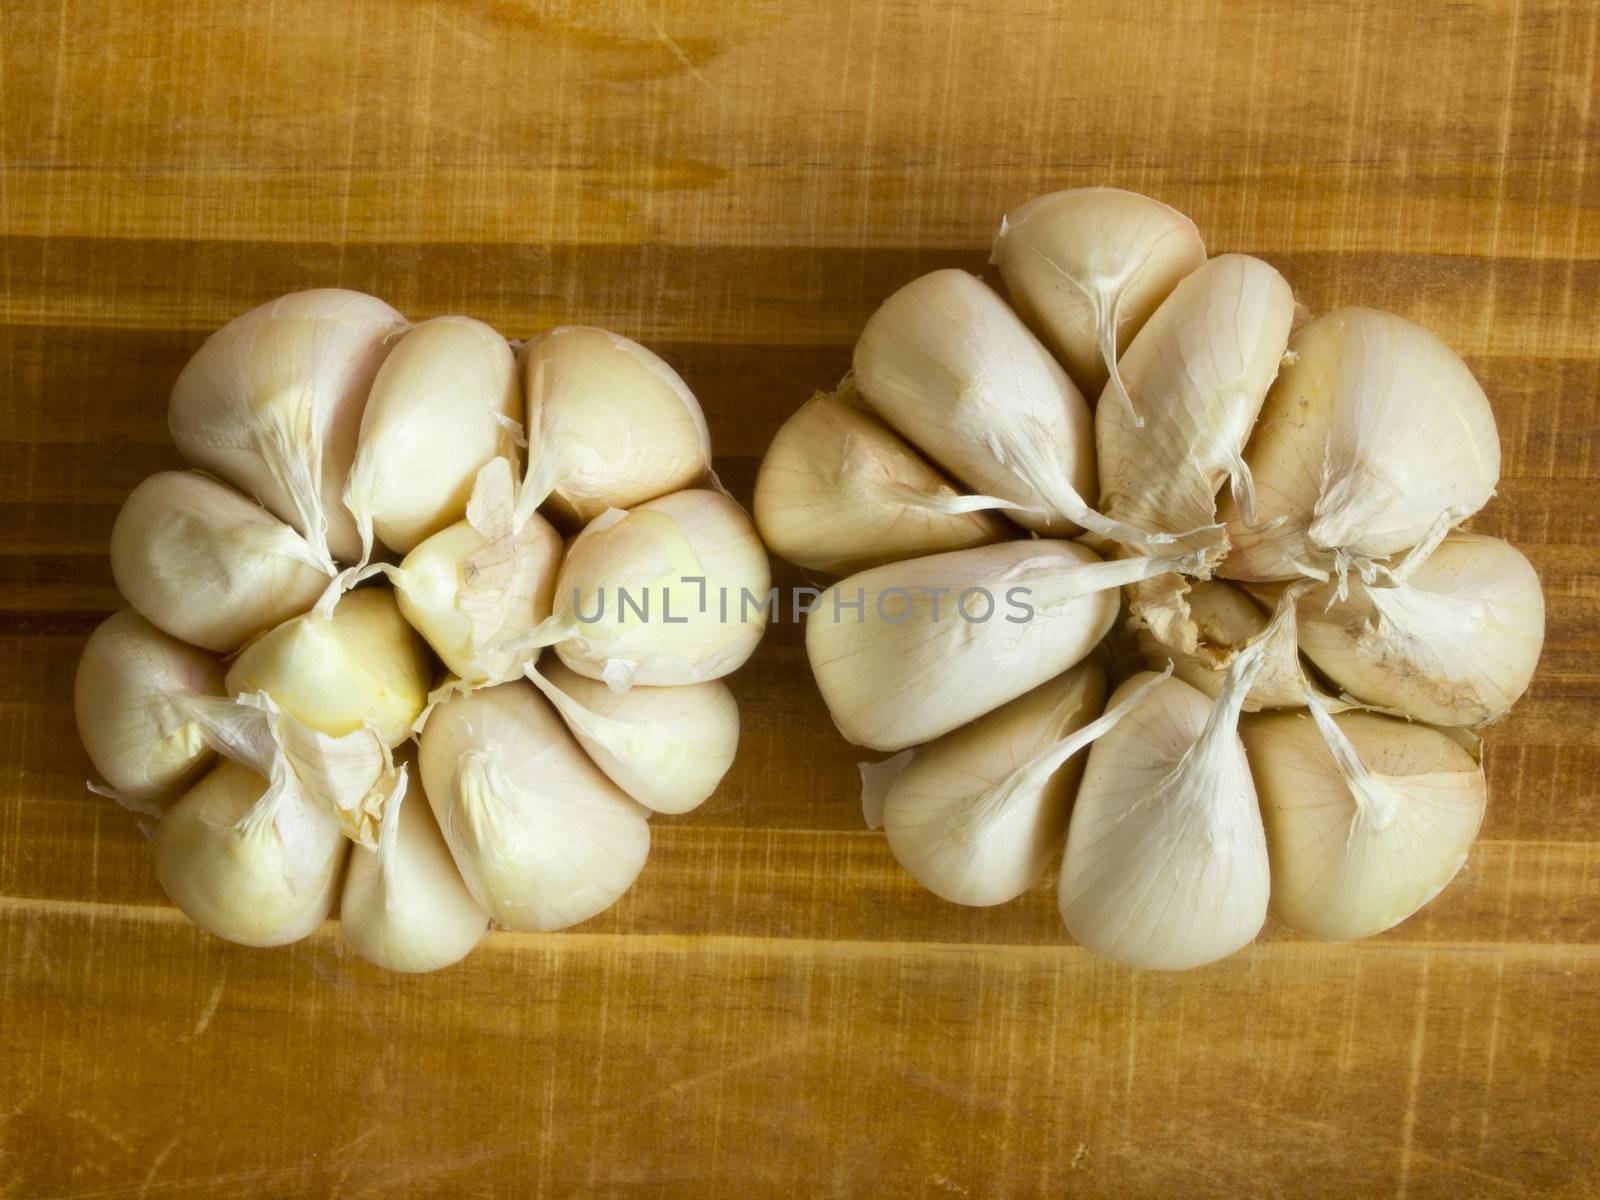 cloves of garlic by zkruger